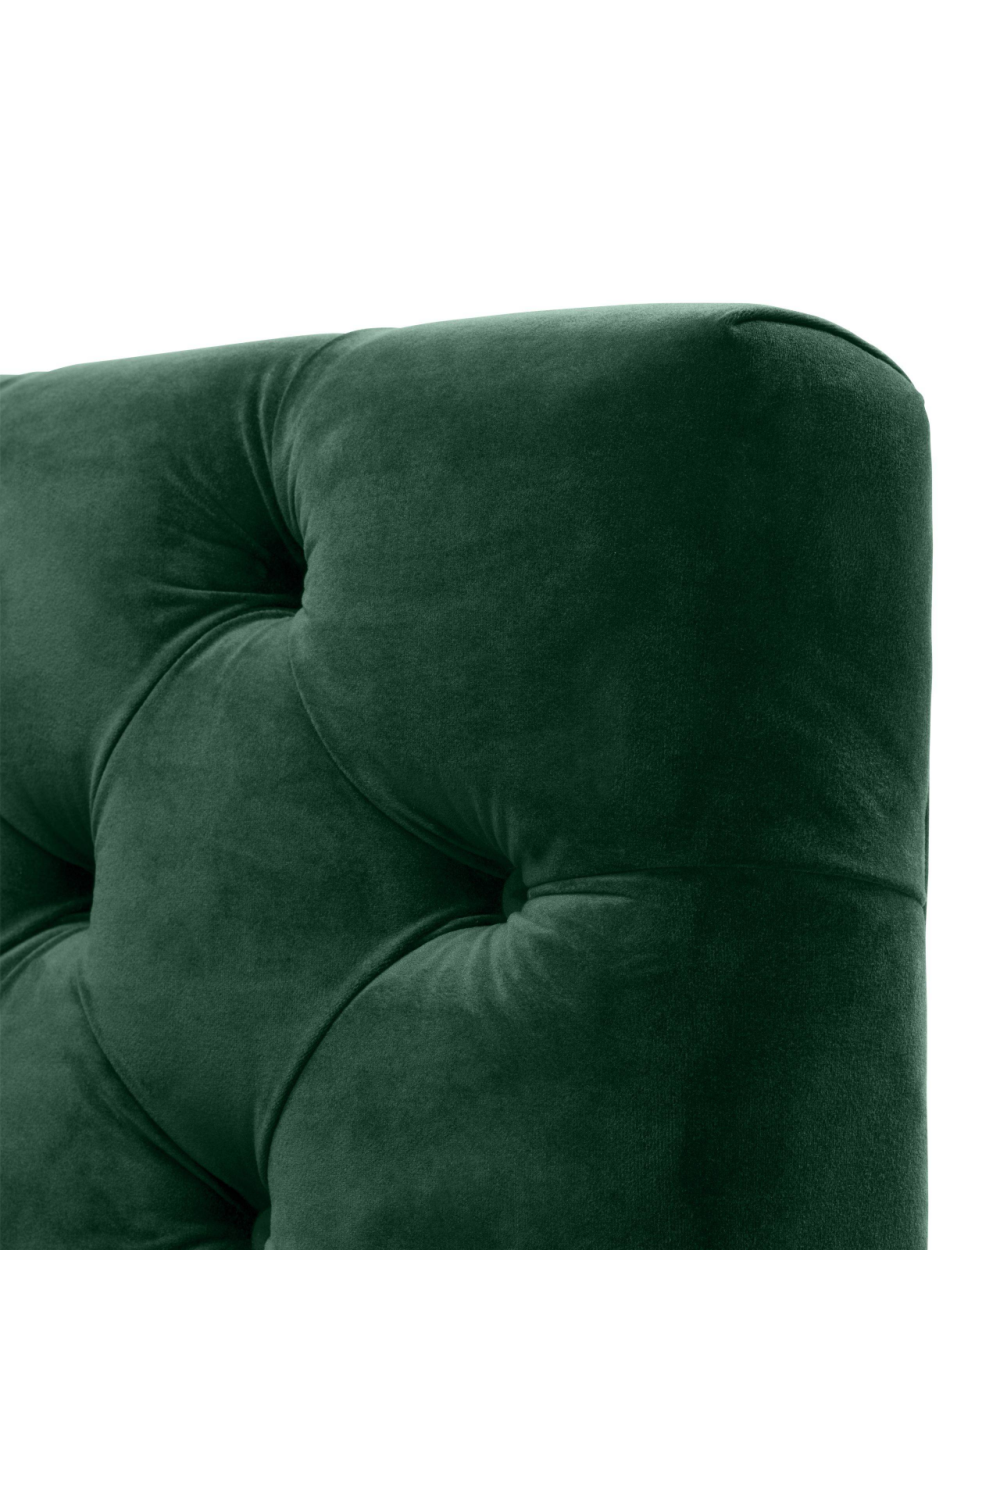 Velvet Buttoned Sofa | Eichholtz Castelle | Oroa.com